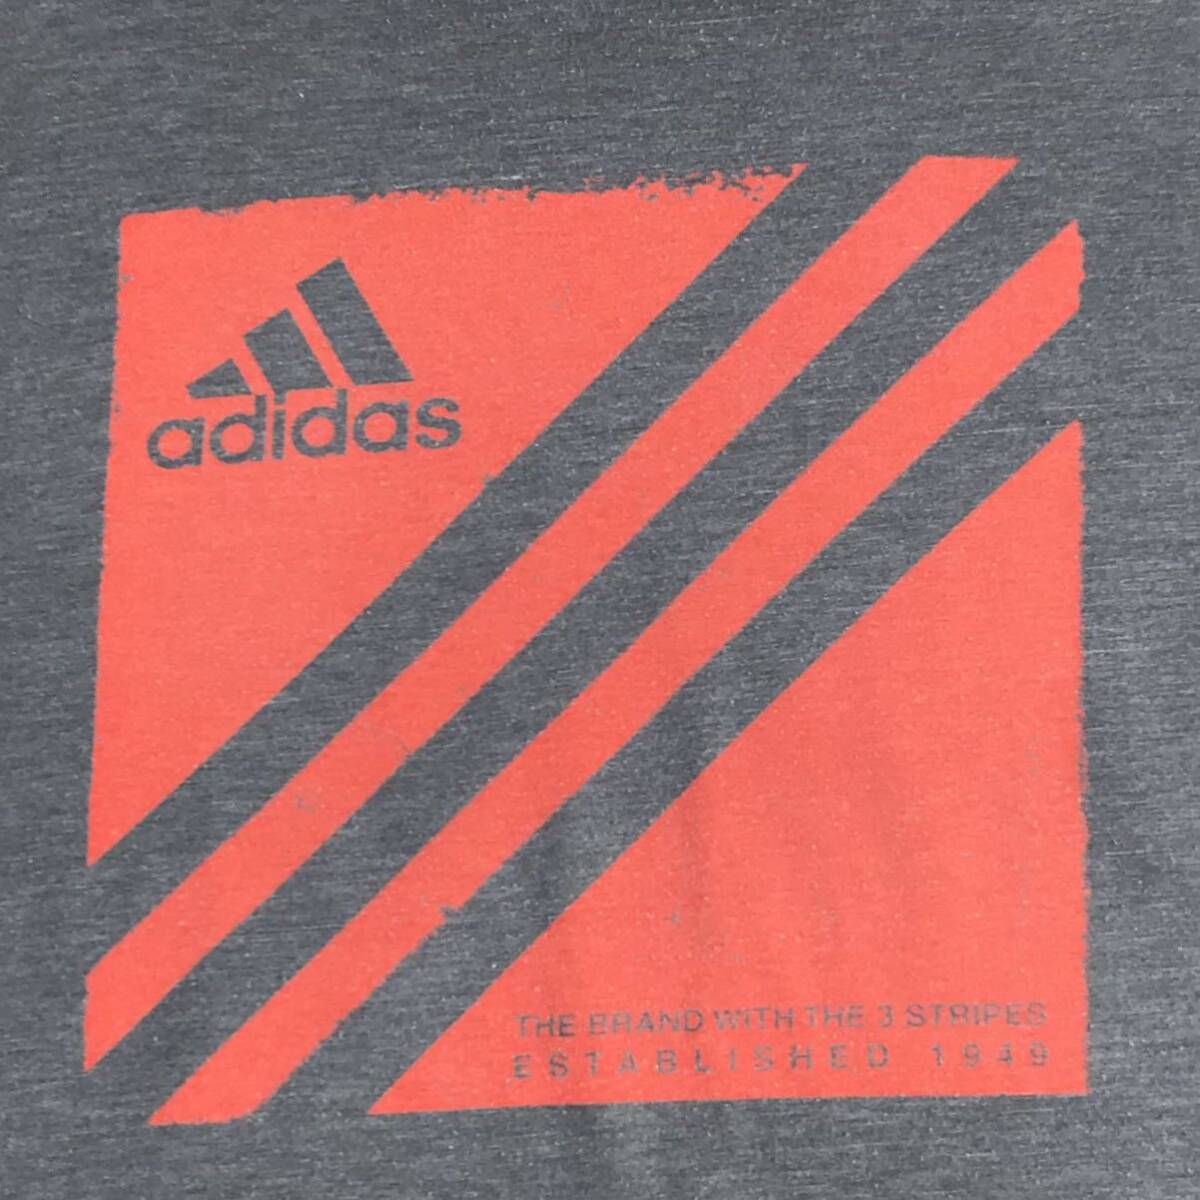 adidas Adidas футболка с длинным рукавом long T принт футболка L серый большой Logo 